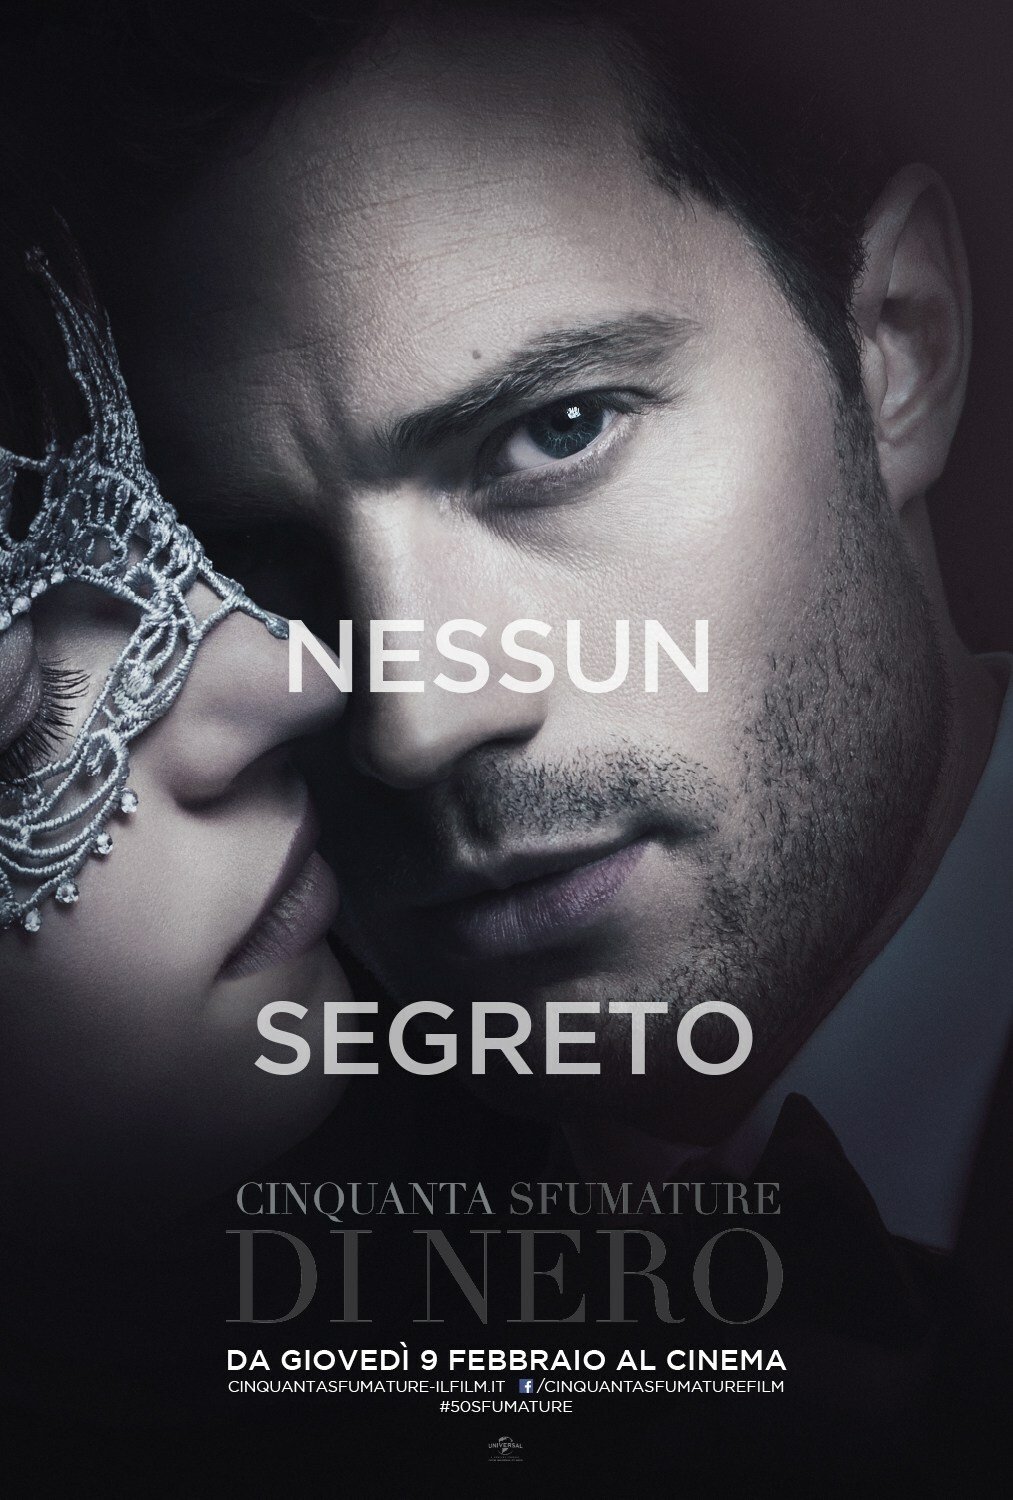 Character poster di Christian Grey per Cinquanta Sfumature di Nero